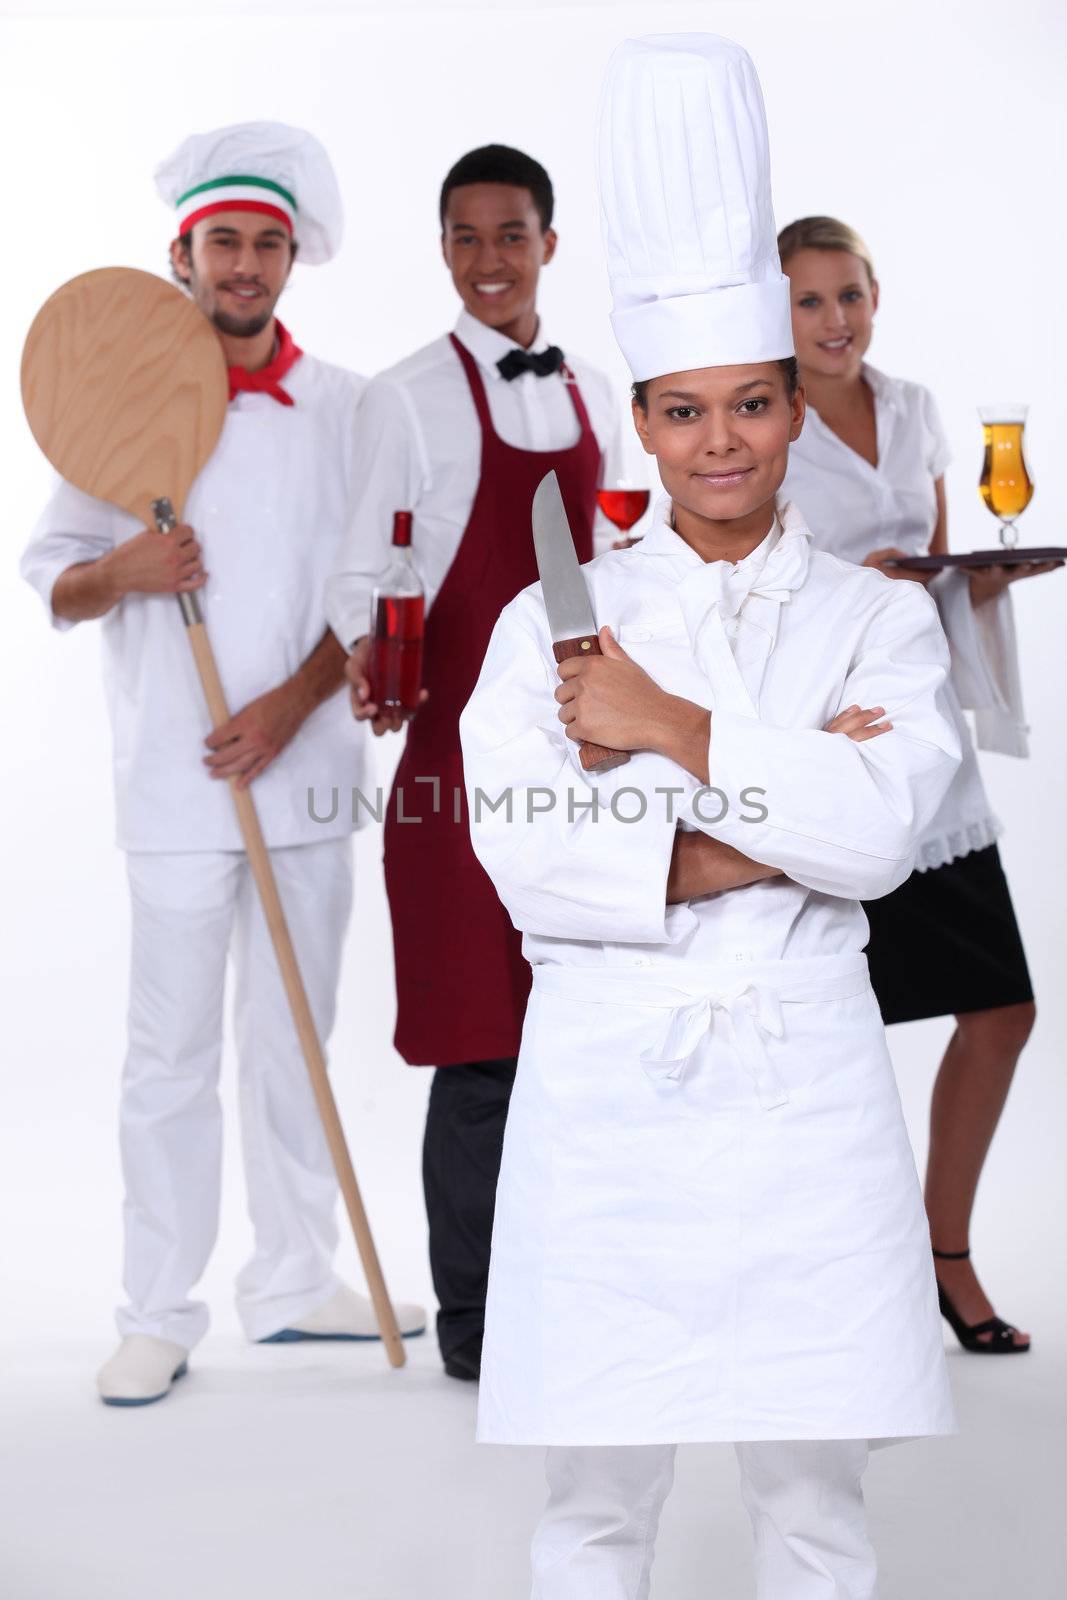 Restaurant staff